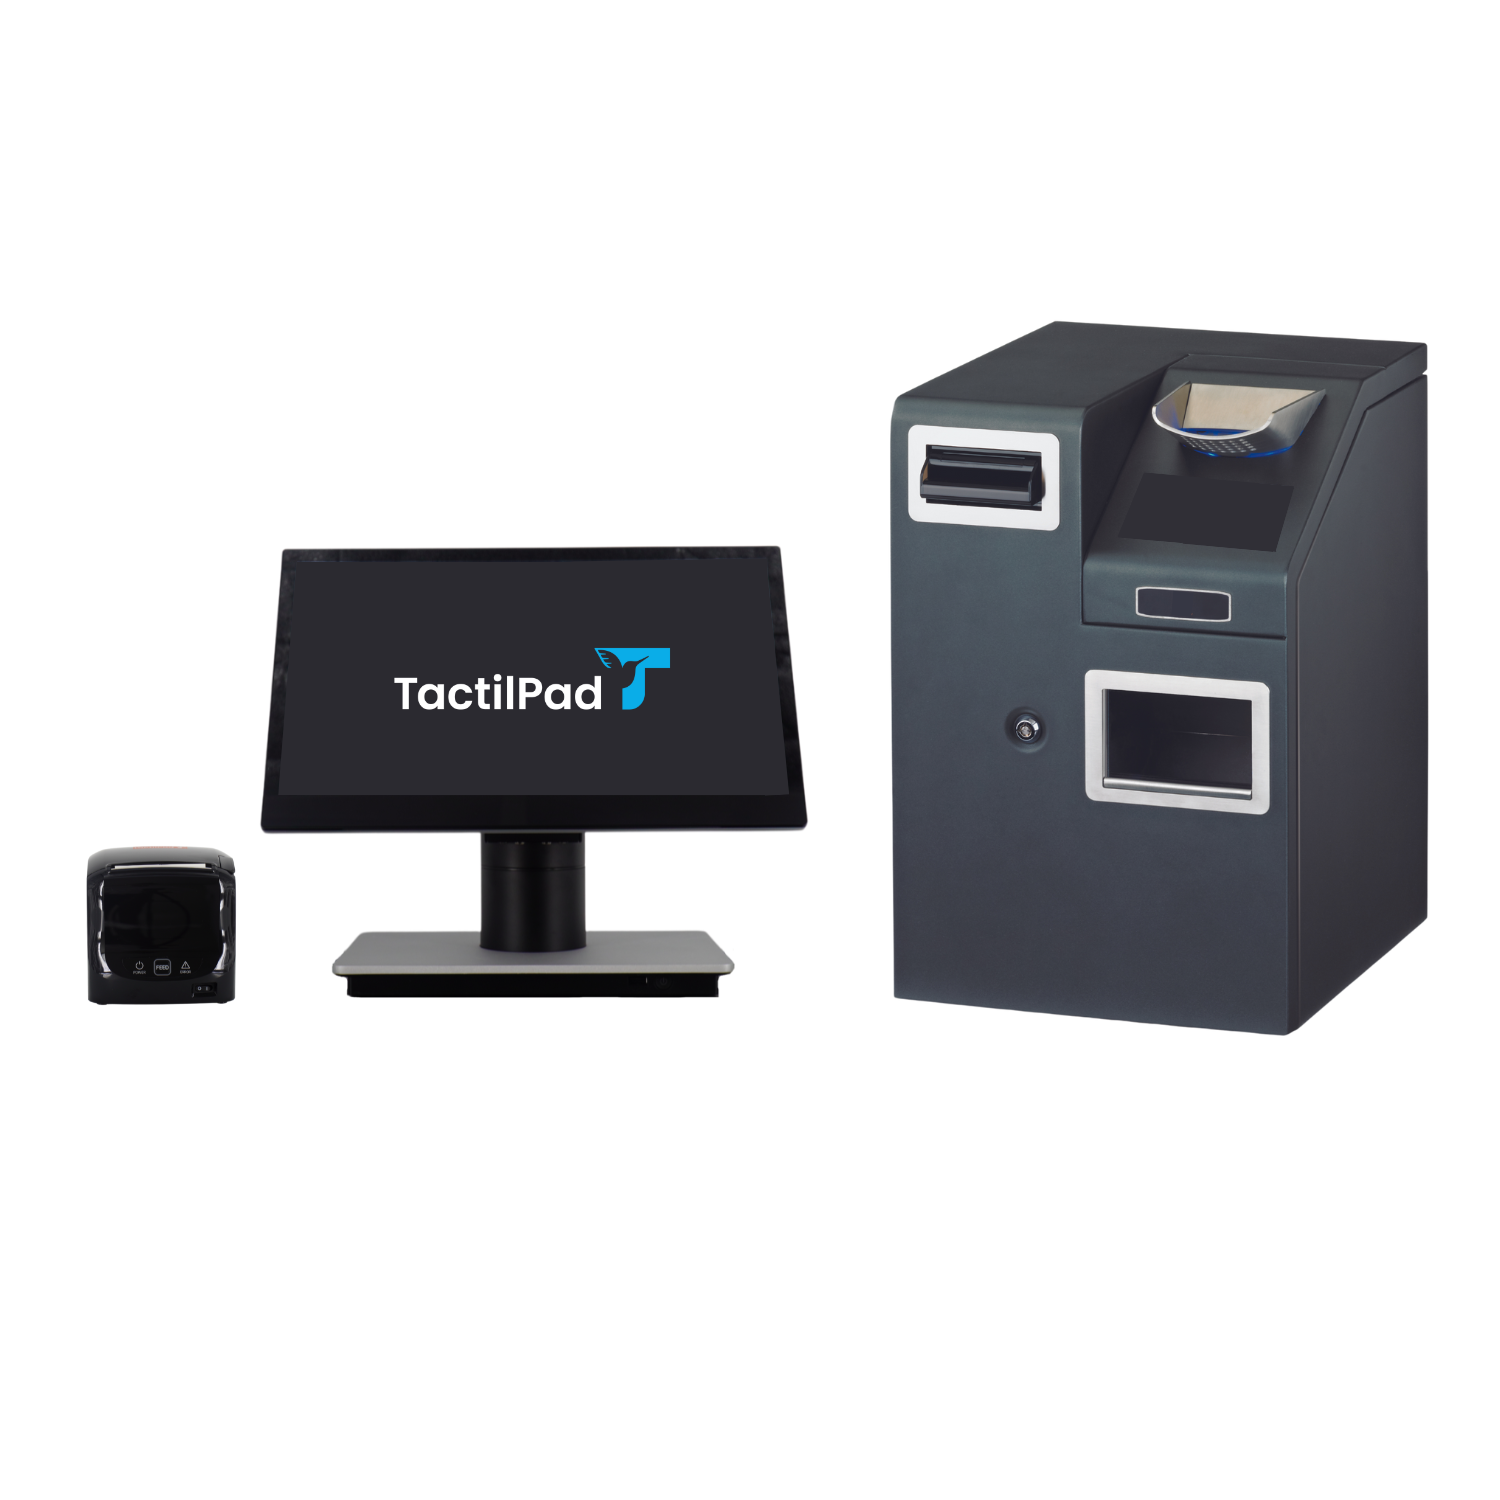 Caisse enregistreuse avec monnayeur automatique tp 200 : bénéficiez d'un matériel fiable et robuste pour gérer en toute sérénité votre commerce_0